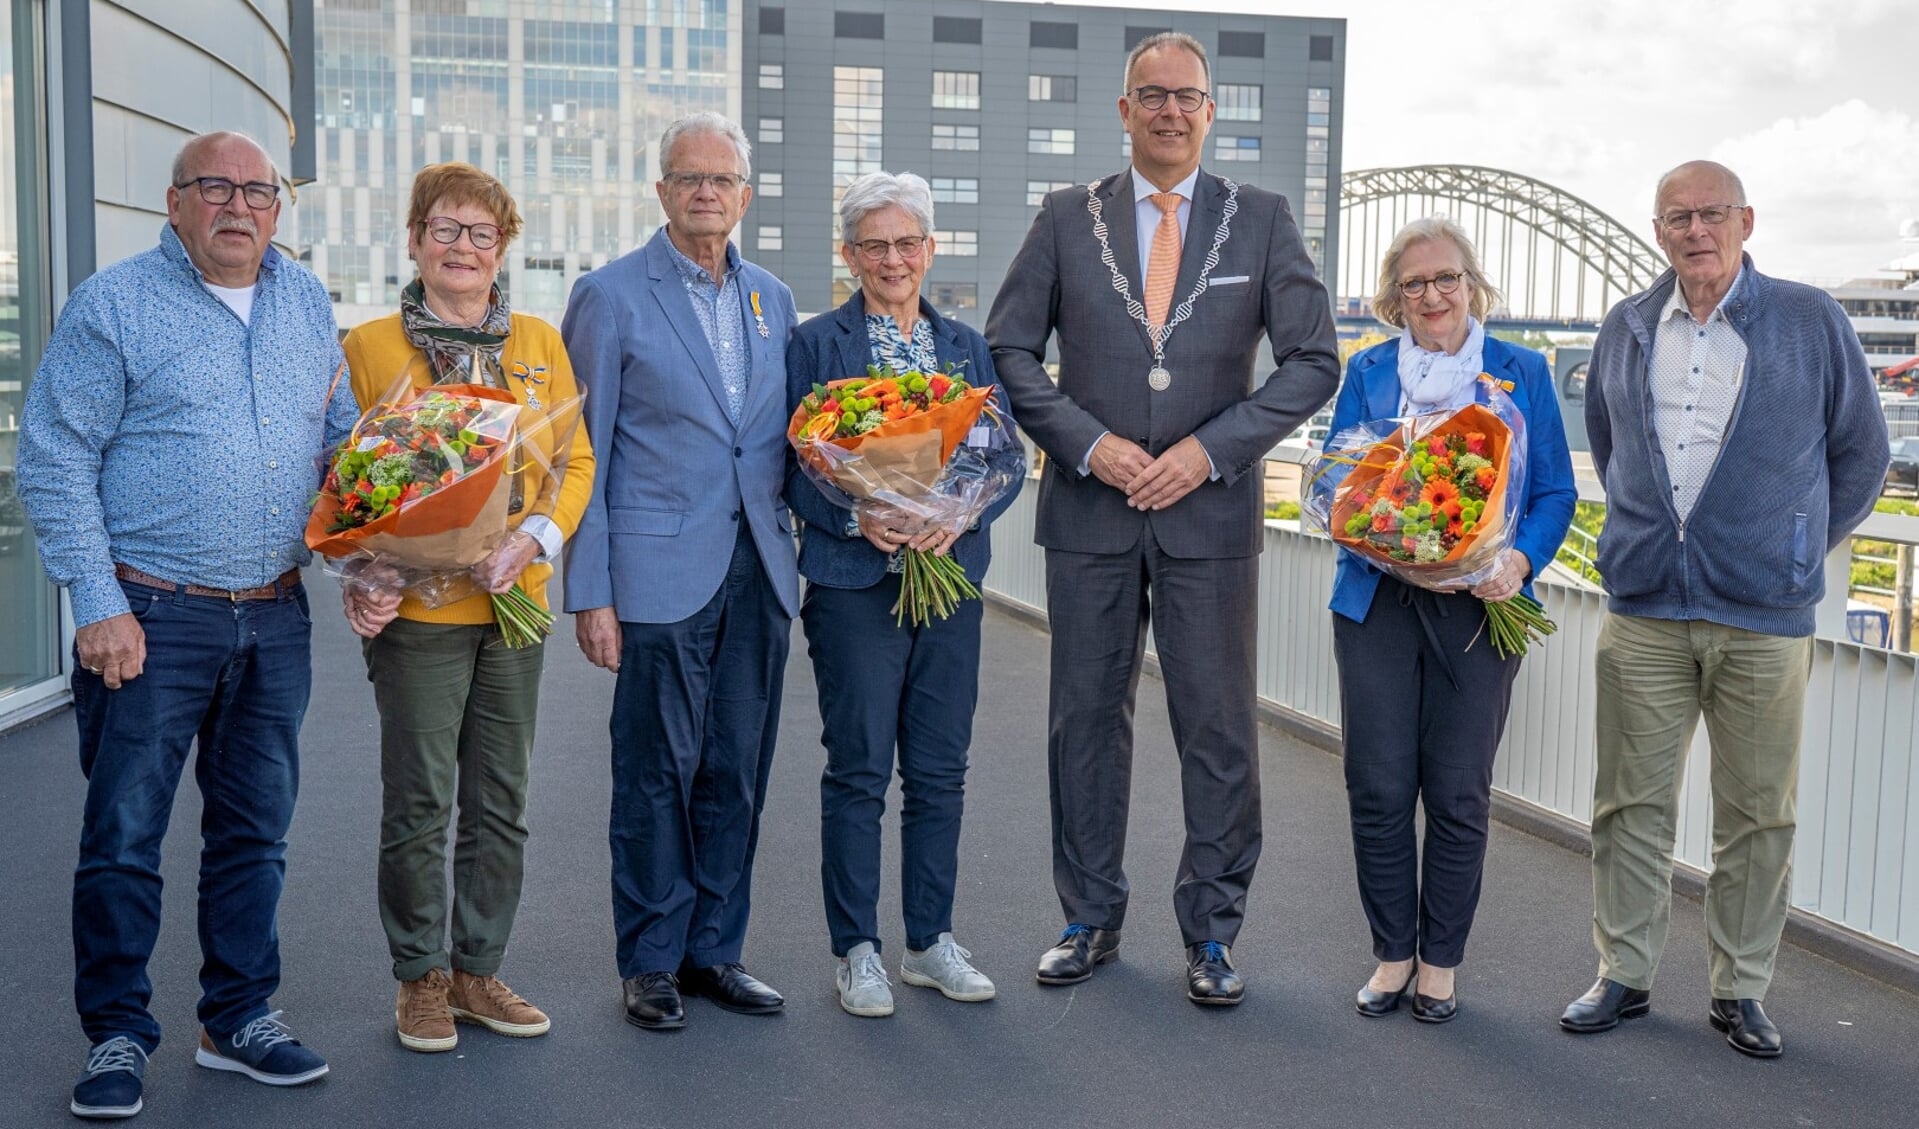 • De drie gedecoreerden met hun partners en de burgemeester, met v.l.n.r. Lena Schut-Beenhakker en haar man, Jan Veth en zijn vrouw, burgemeester Paans en Els van Houwelingen en haar man.